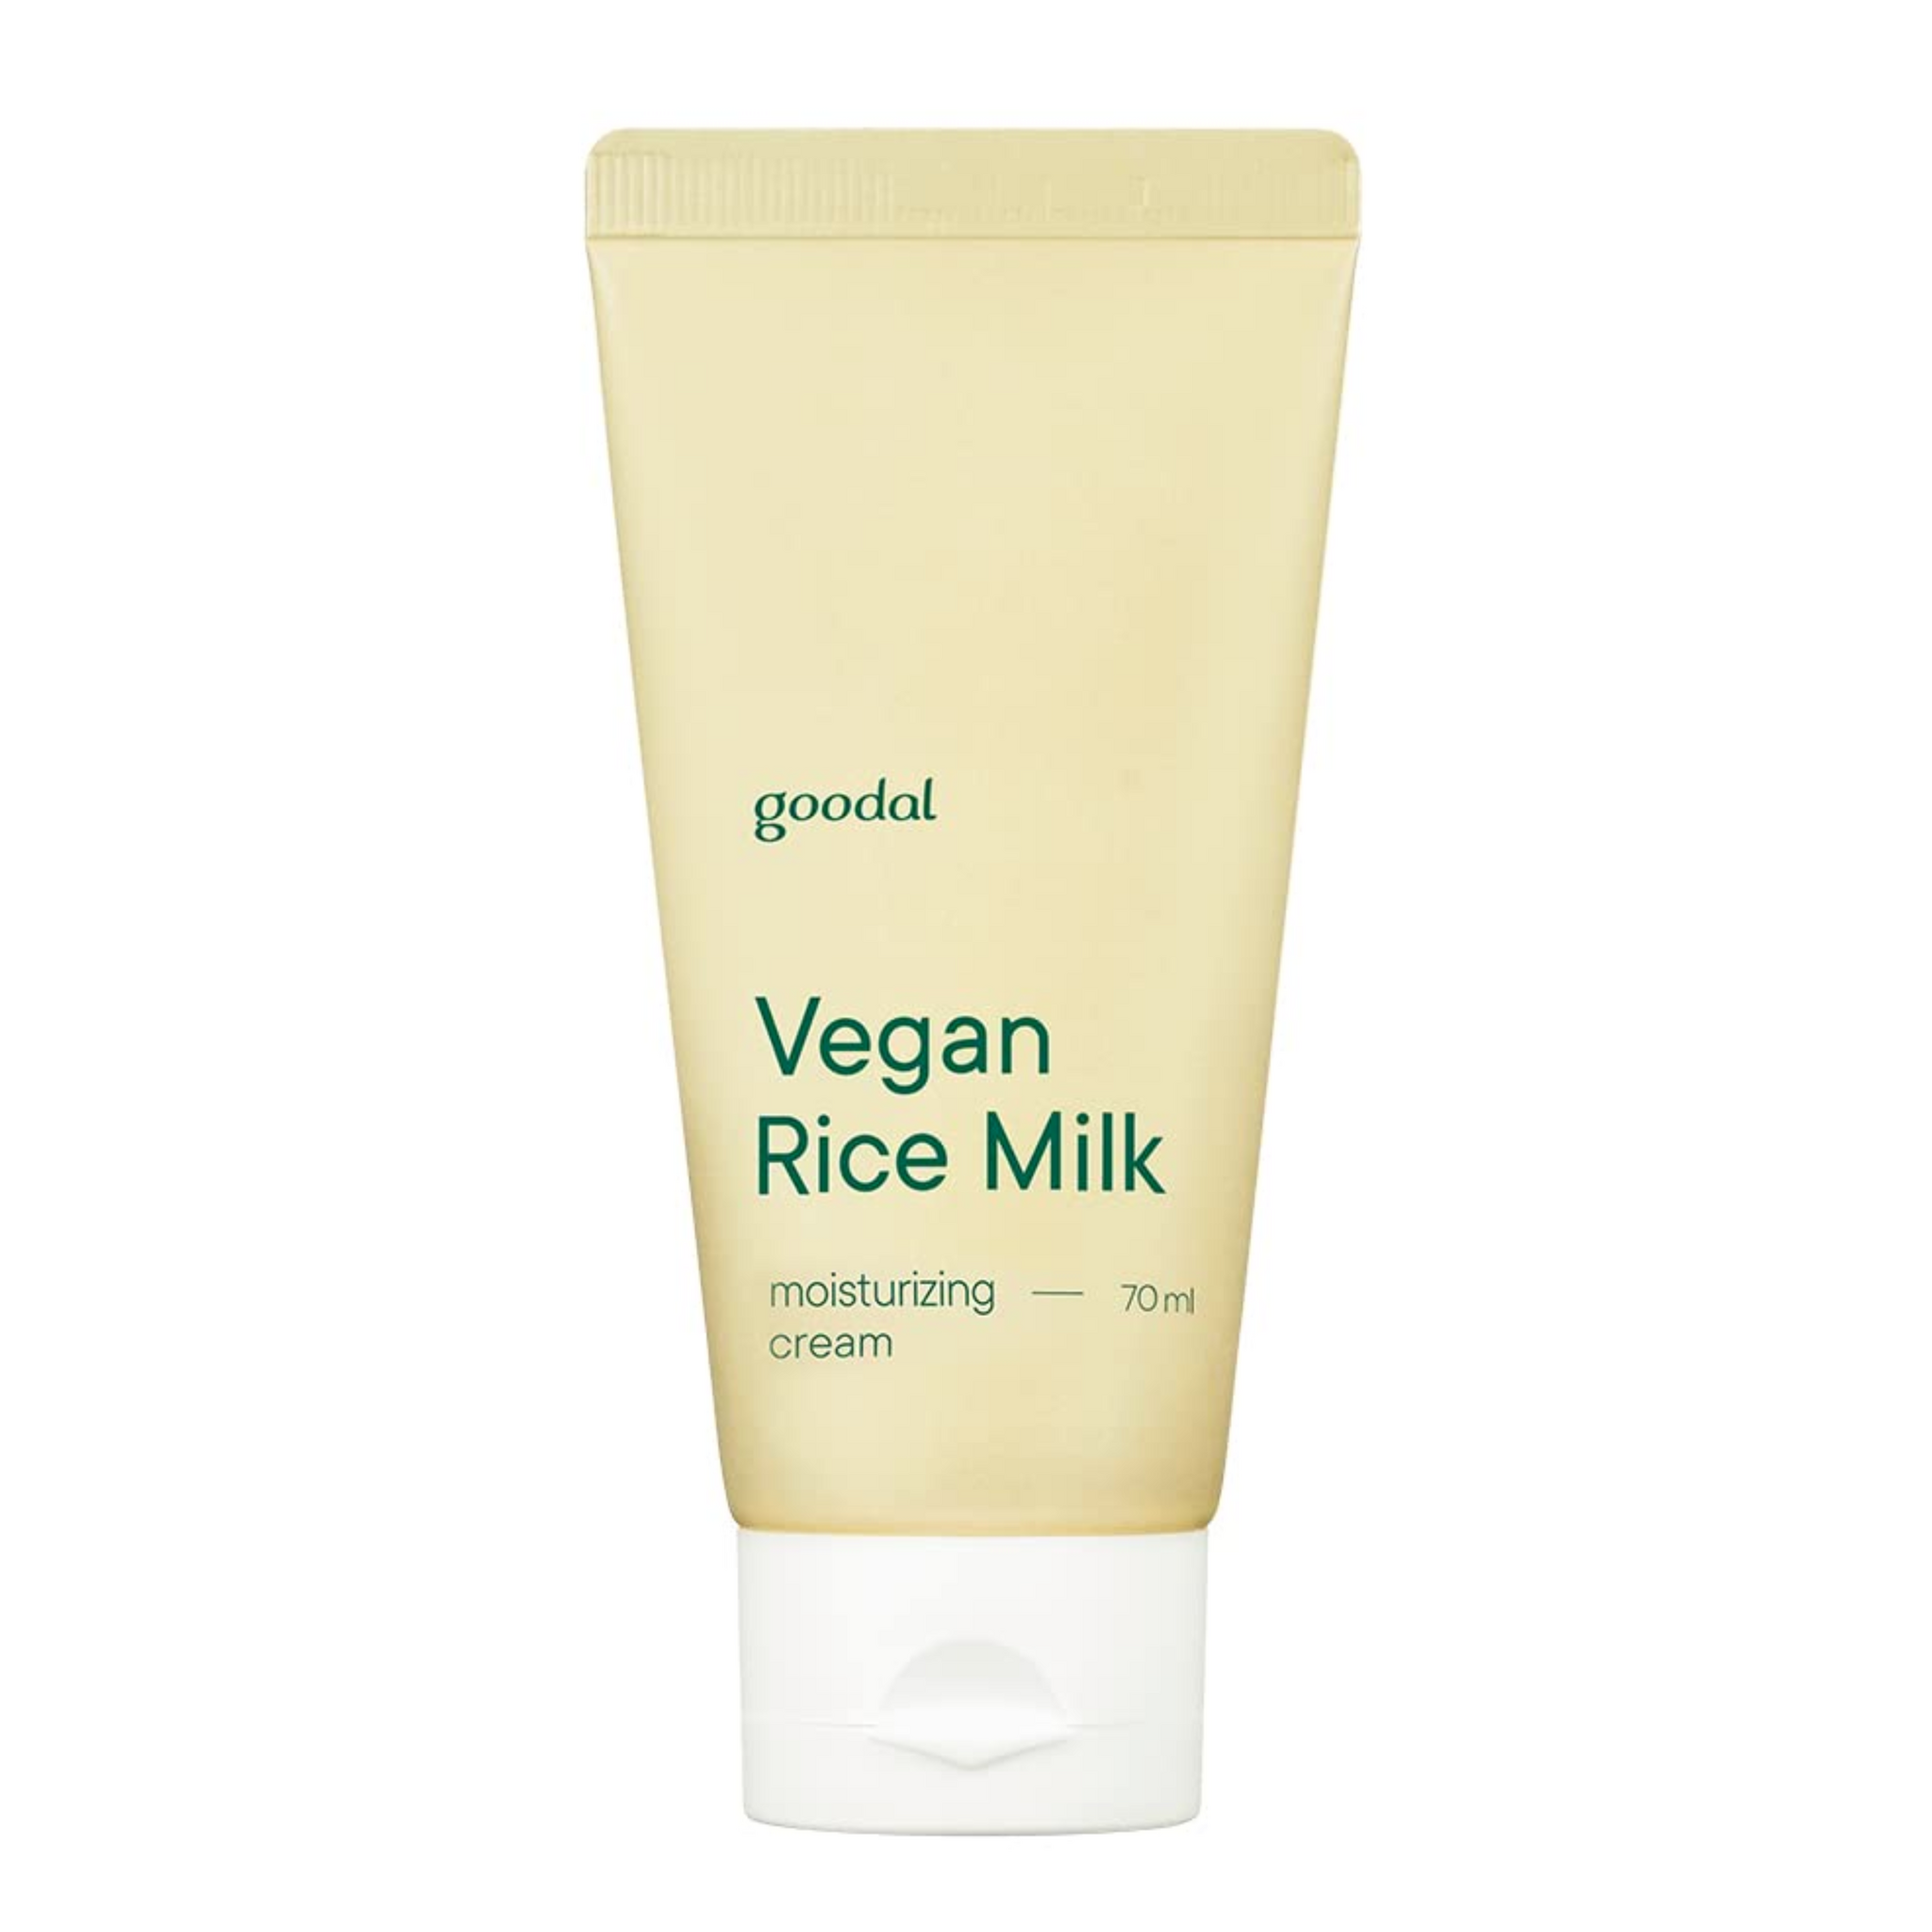 GOODAL Vegan Rice Milk Moisturizing Cream